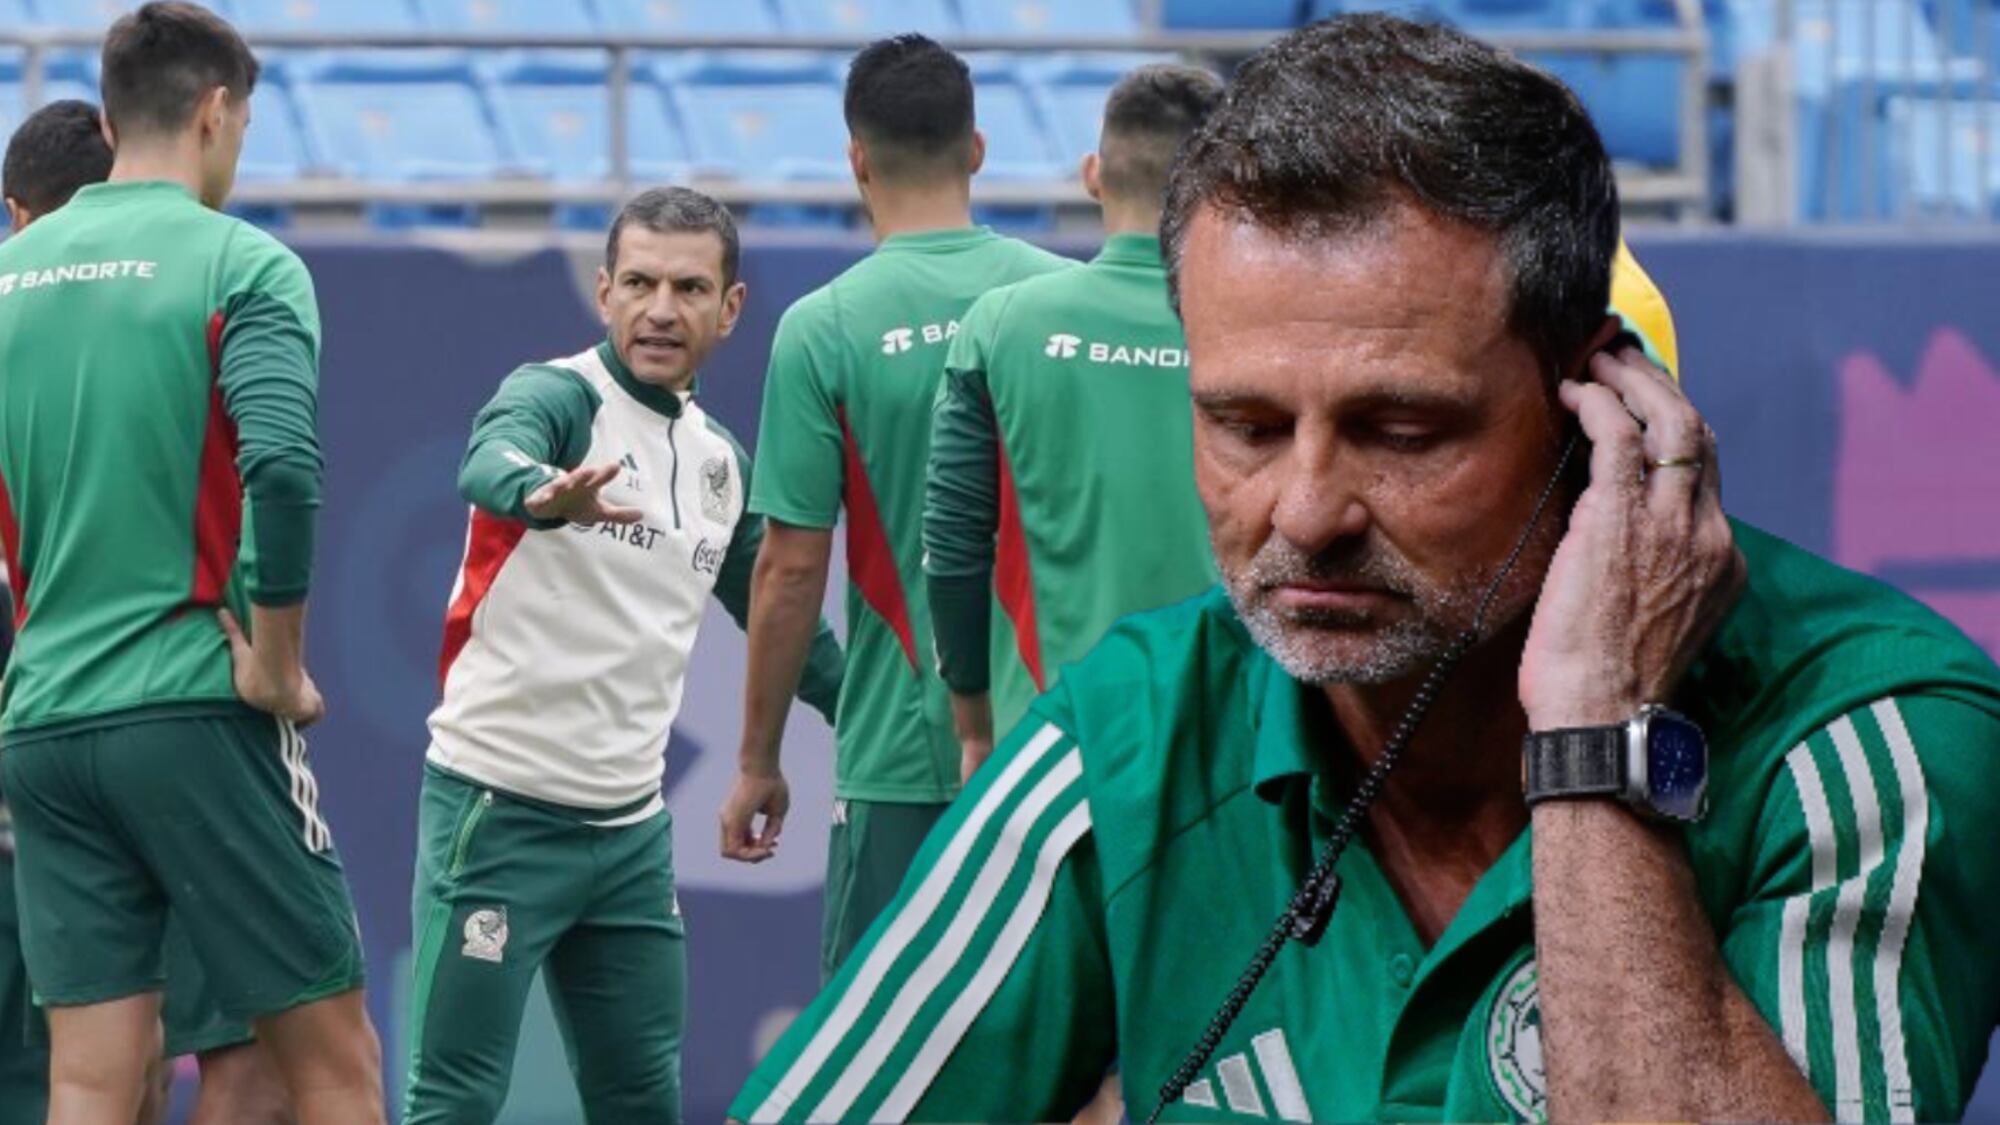 (VIDEO) Con Cocca se quejaban de entrenar demasiado, ahora así entrena México con Lozano